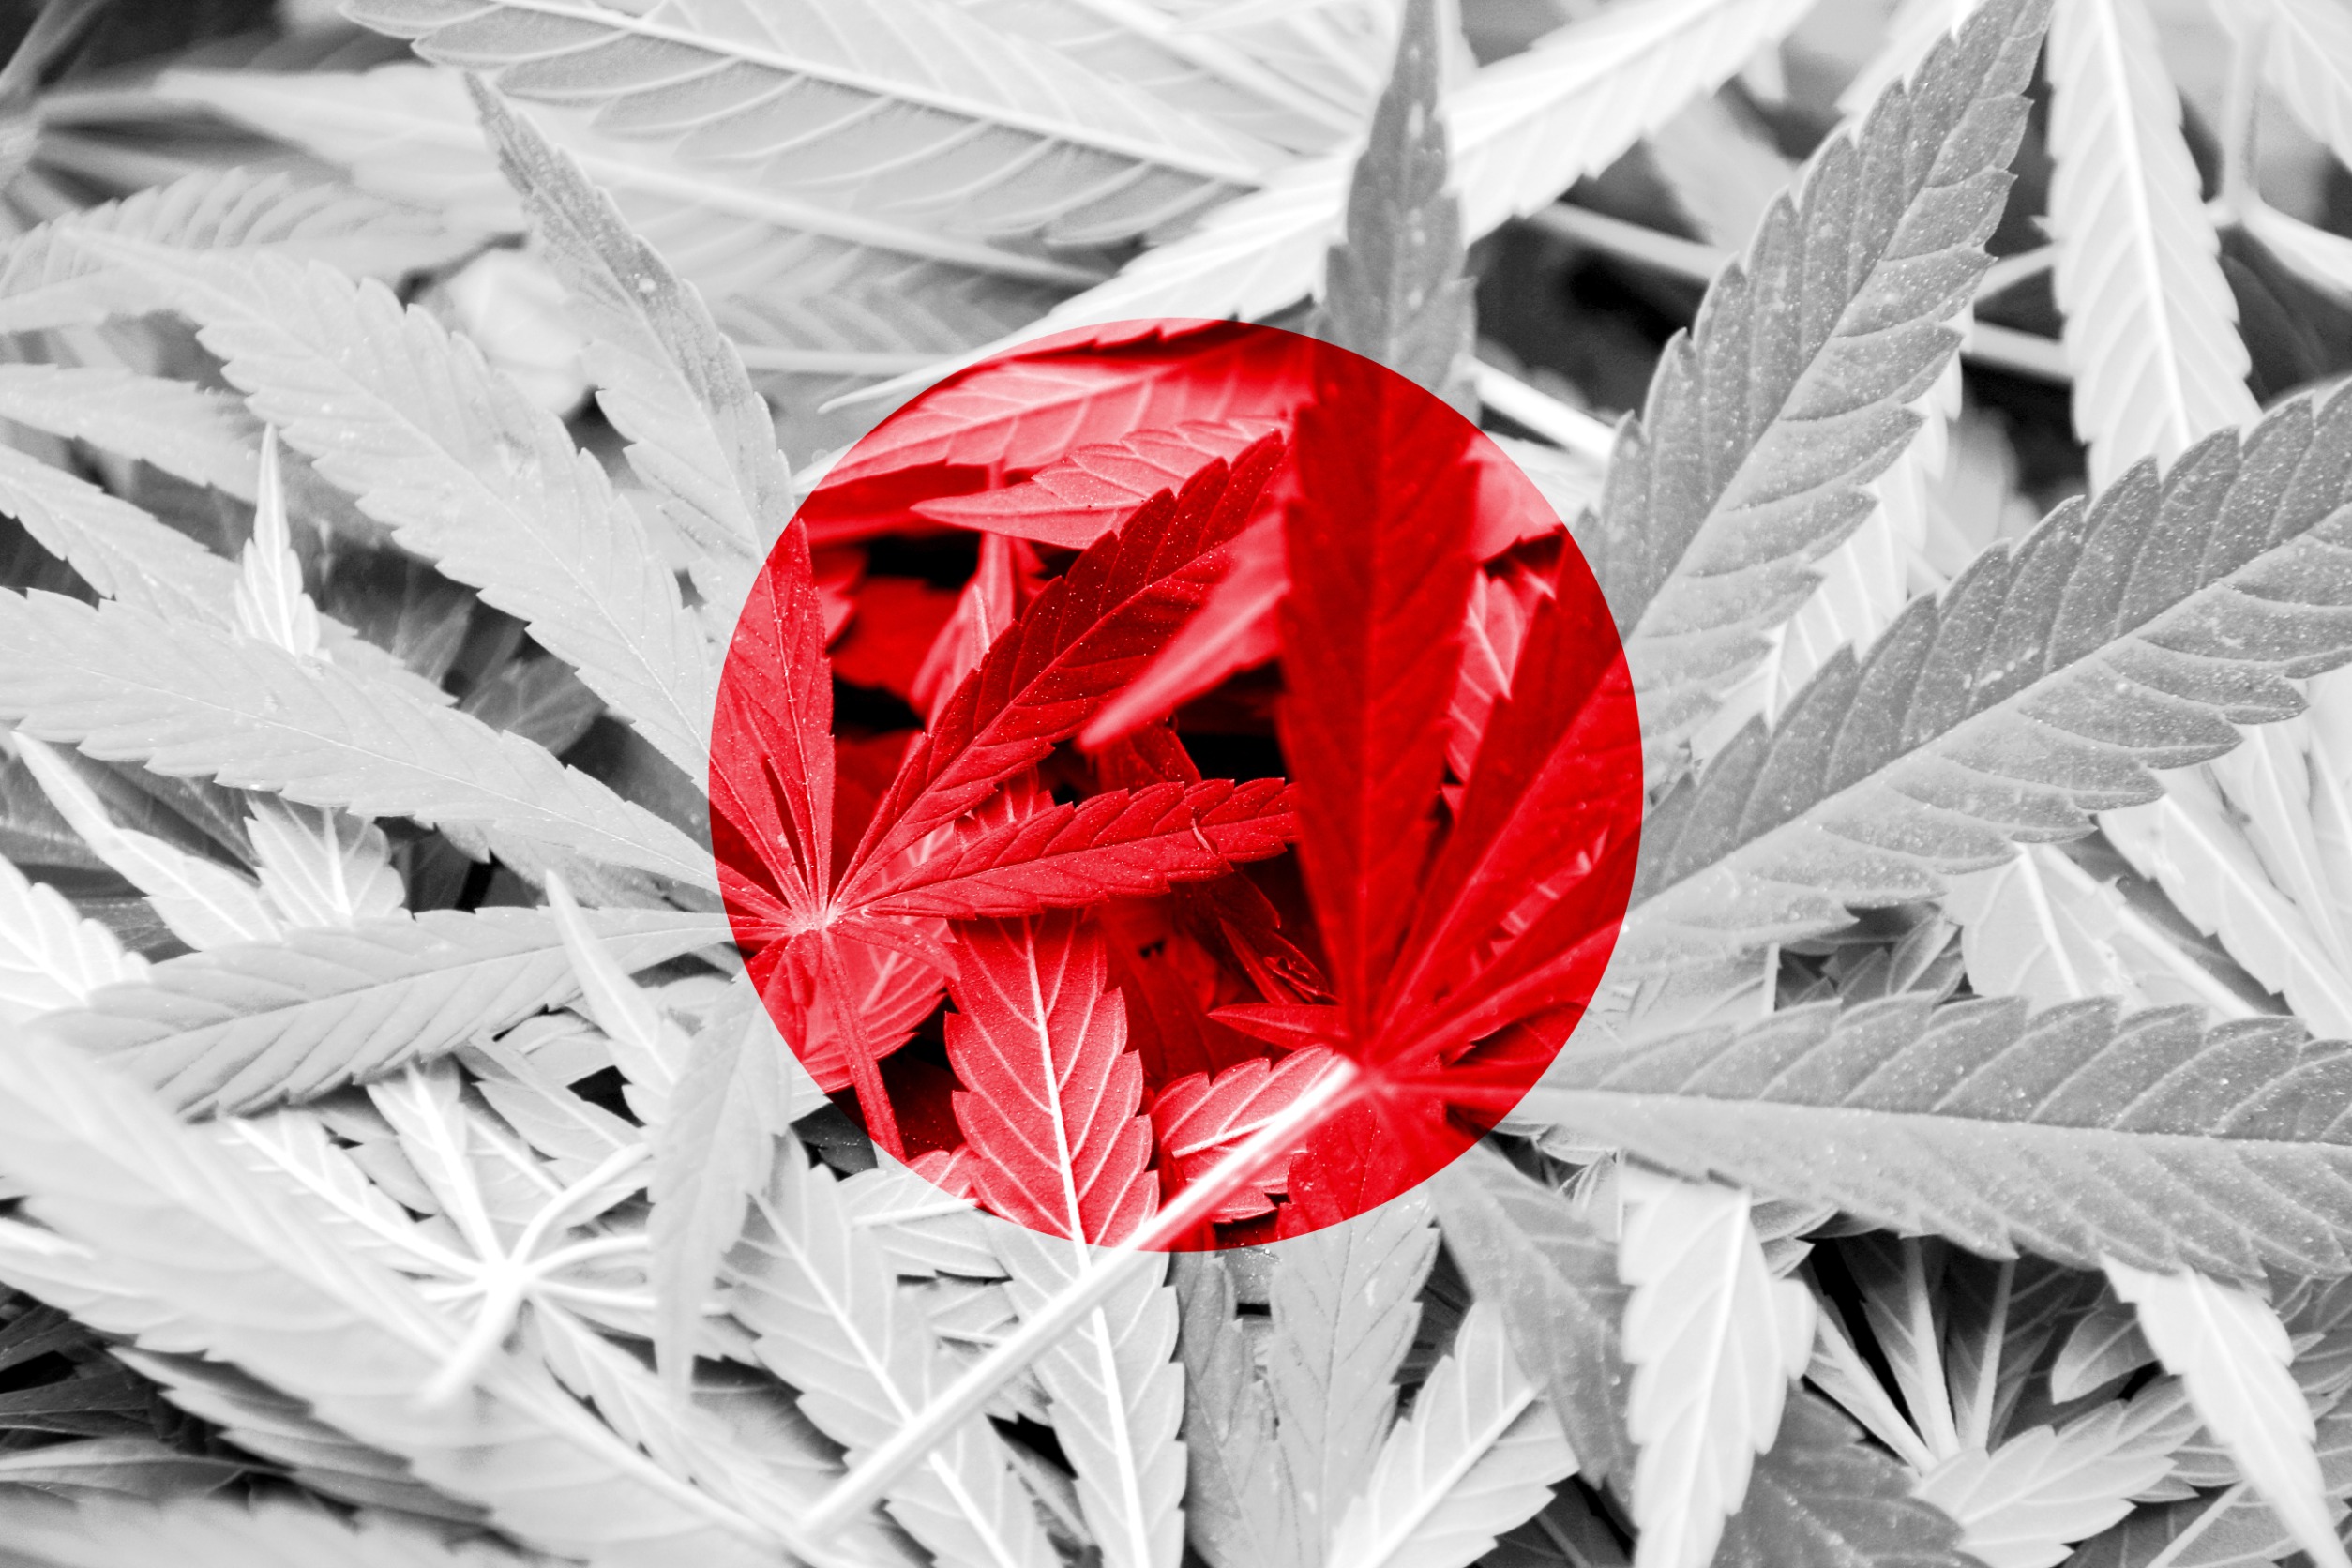 Is weed legal in Japan?